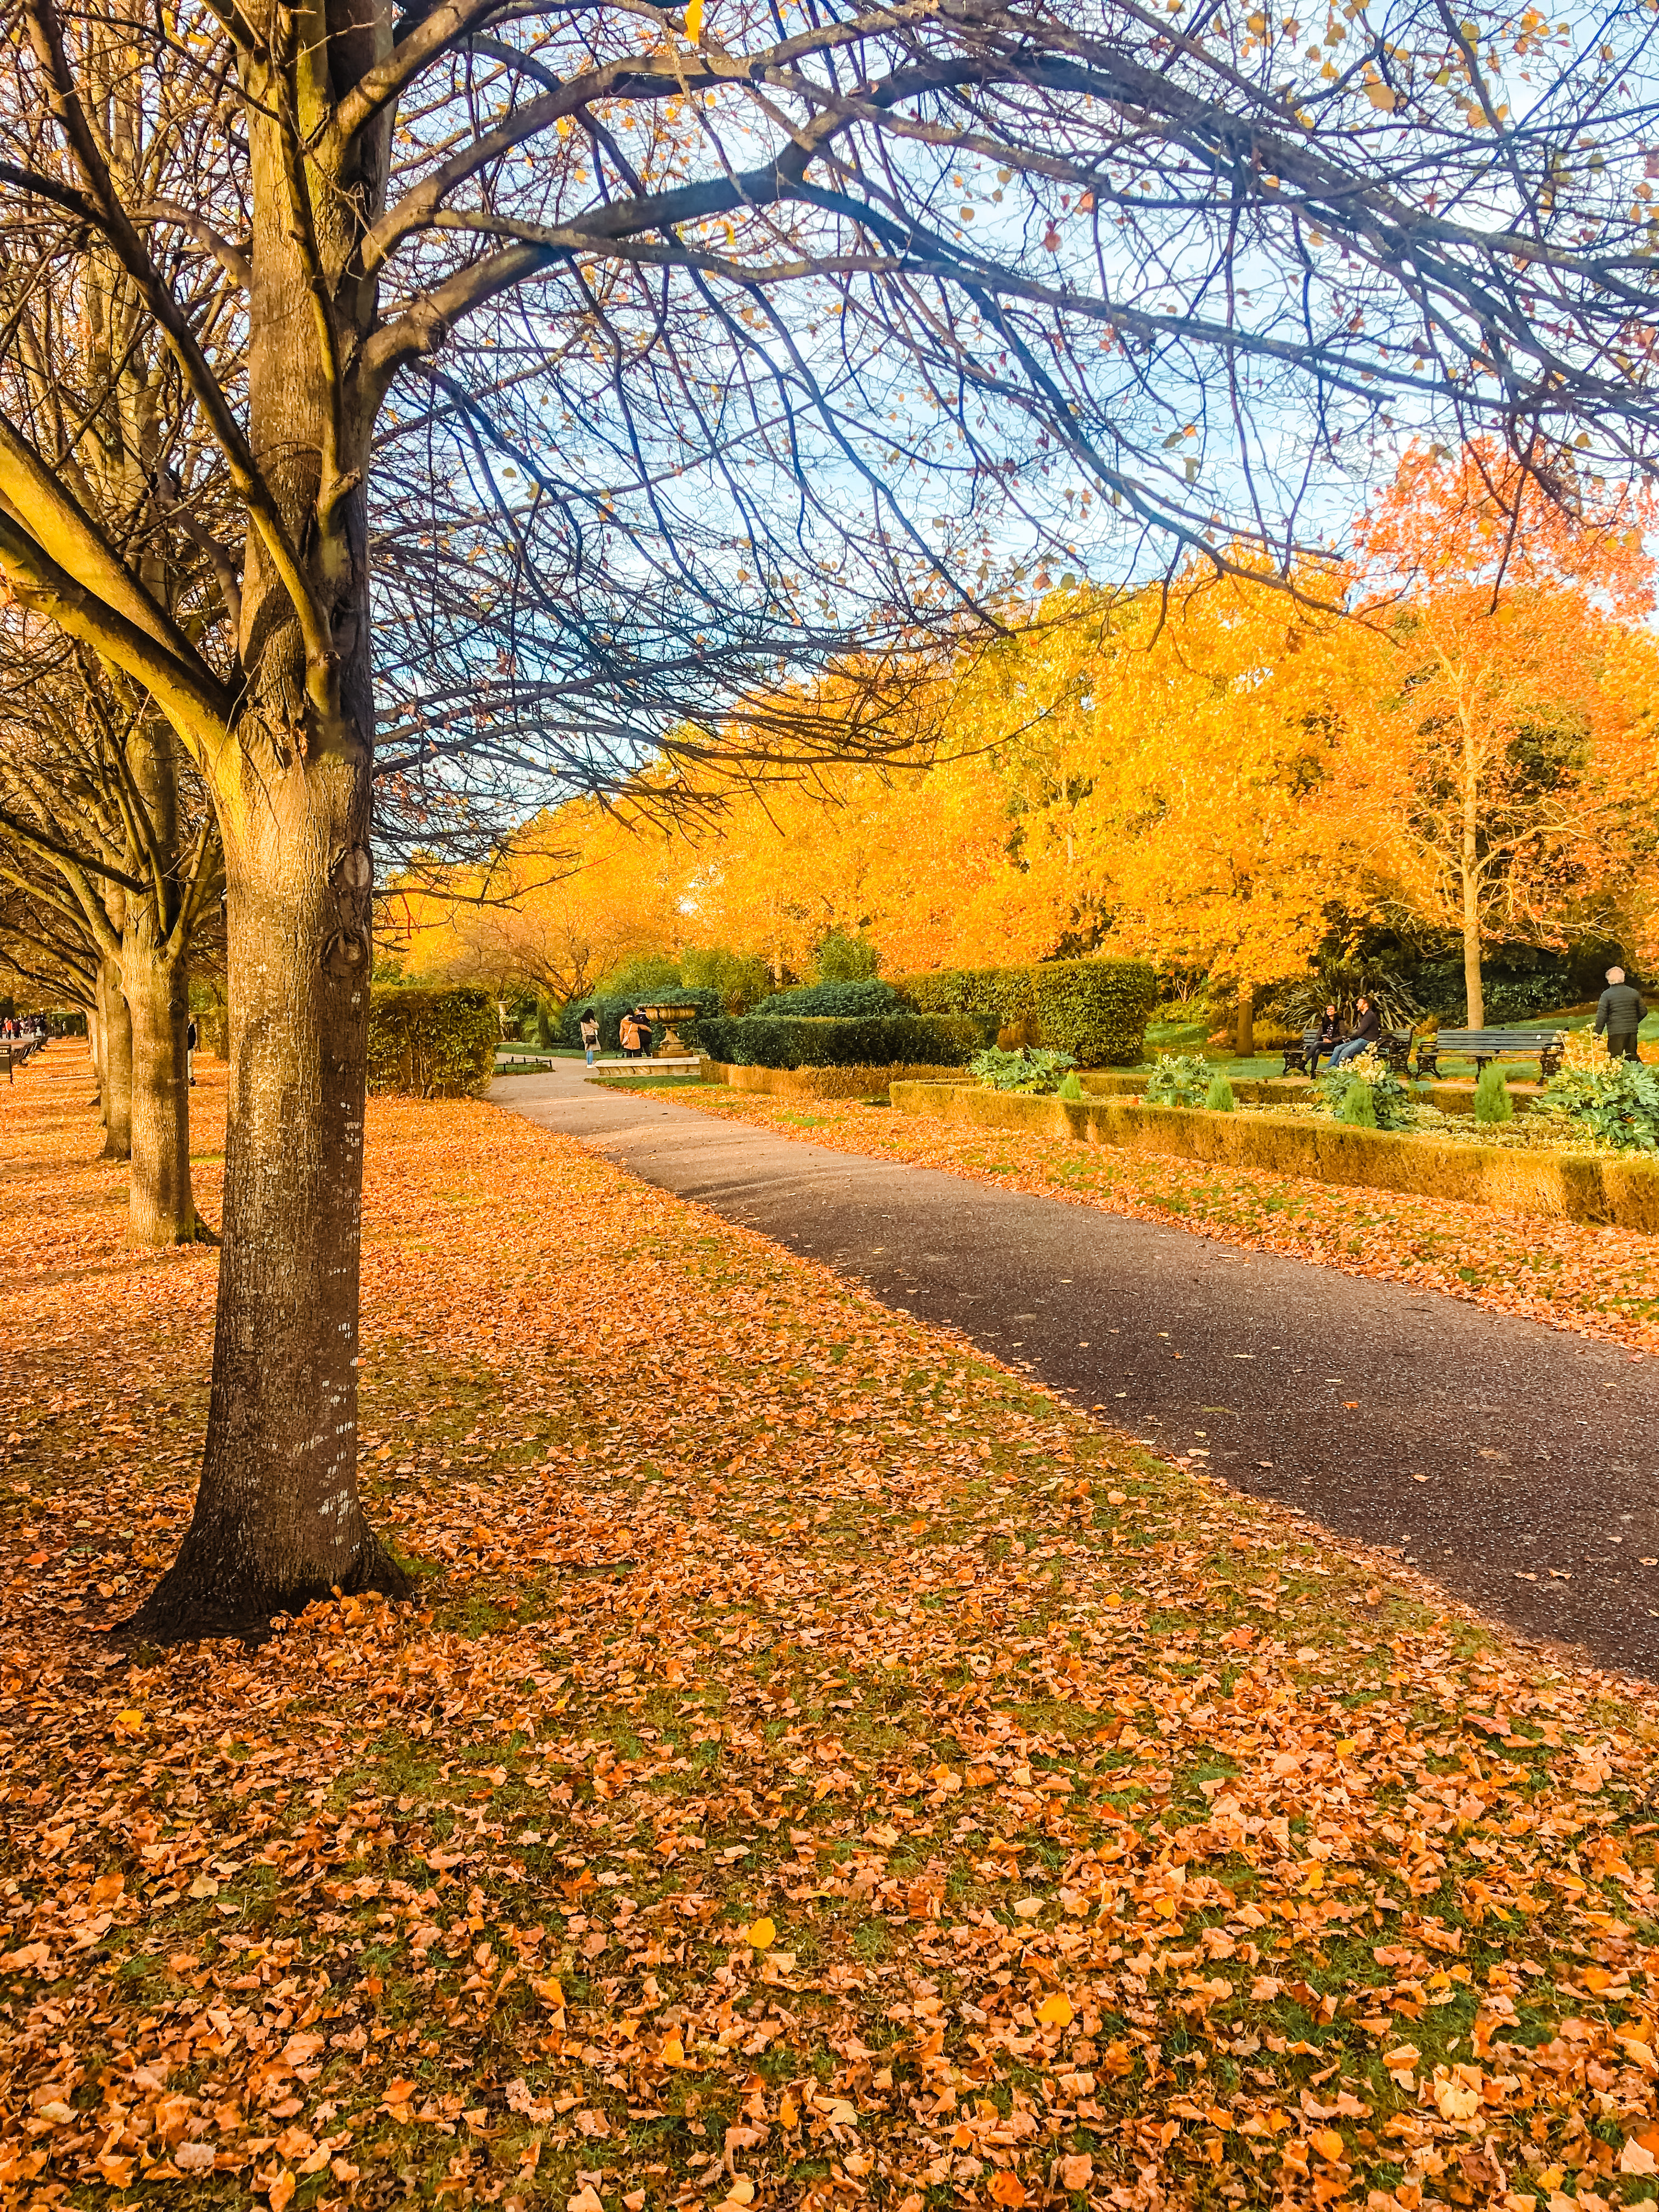 Autumn in Regent's Park